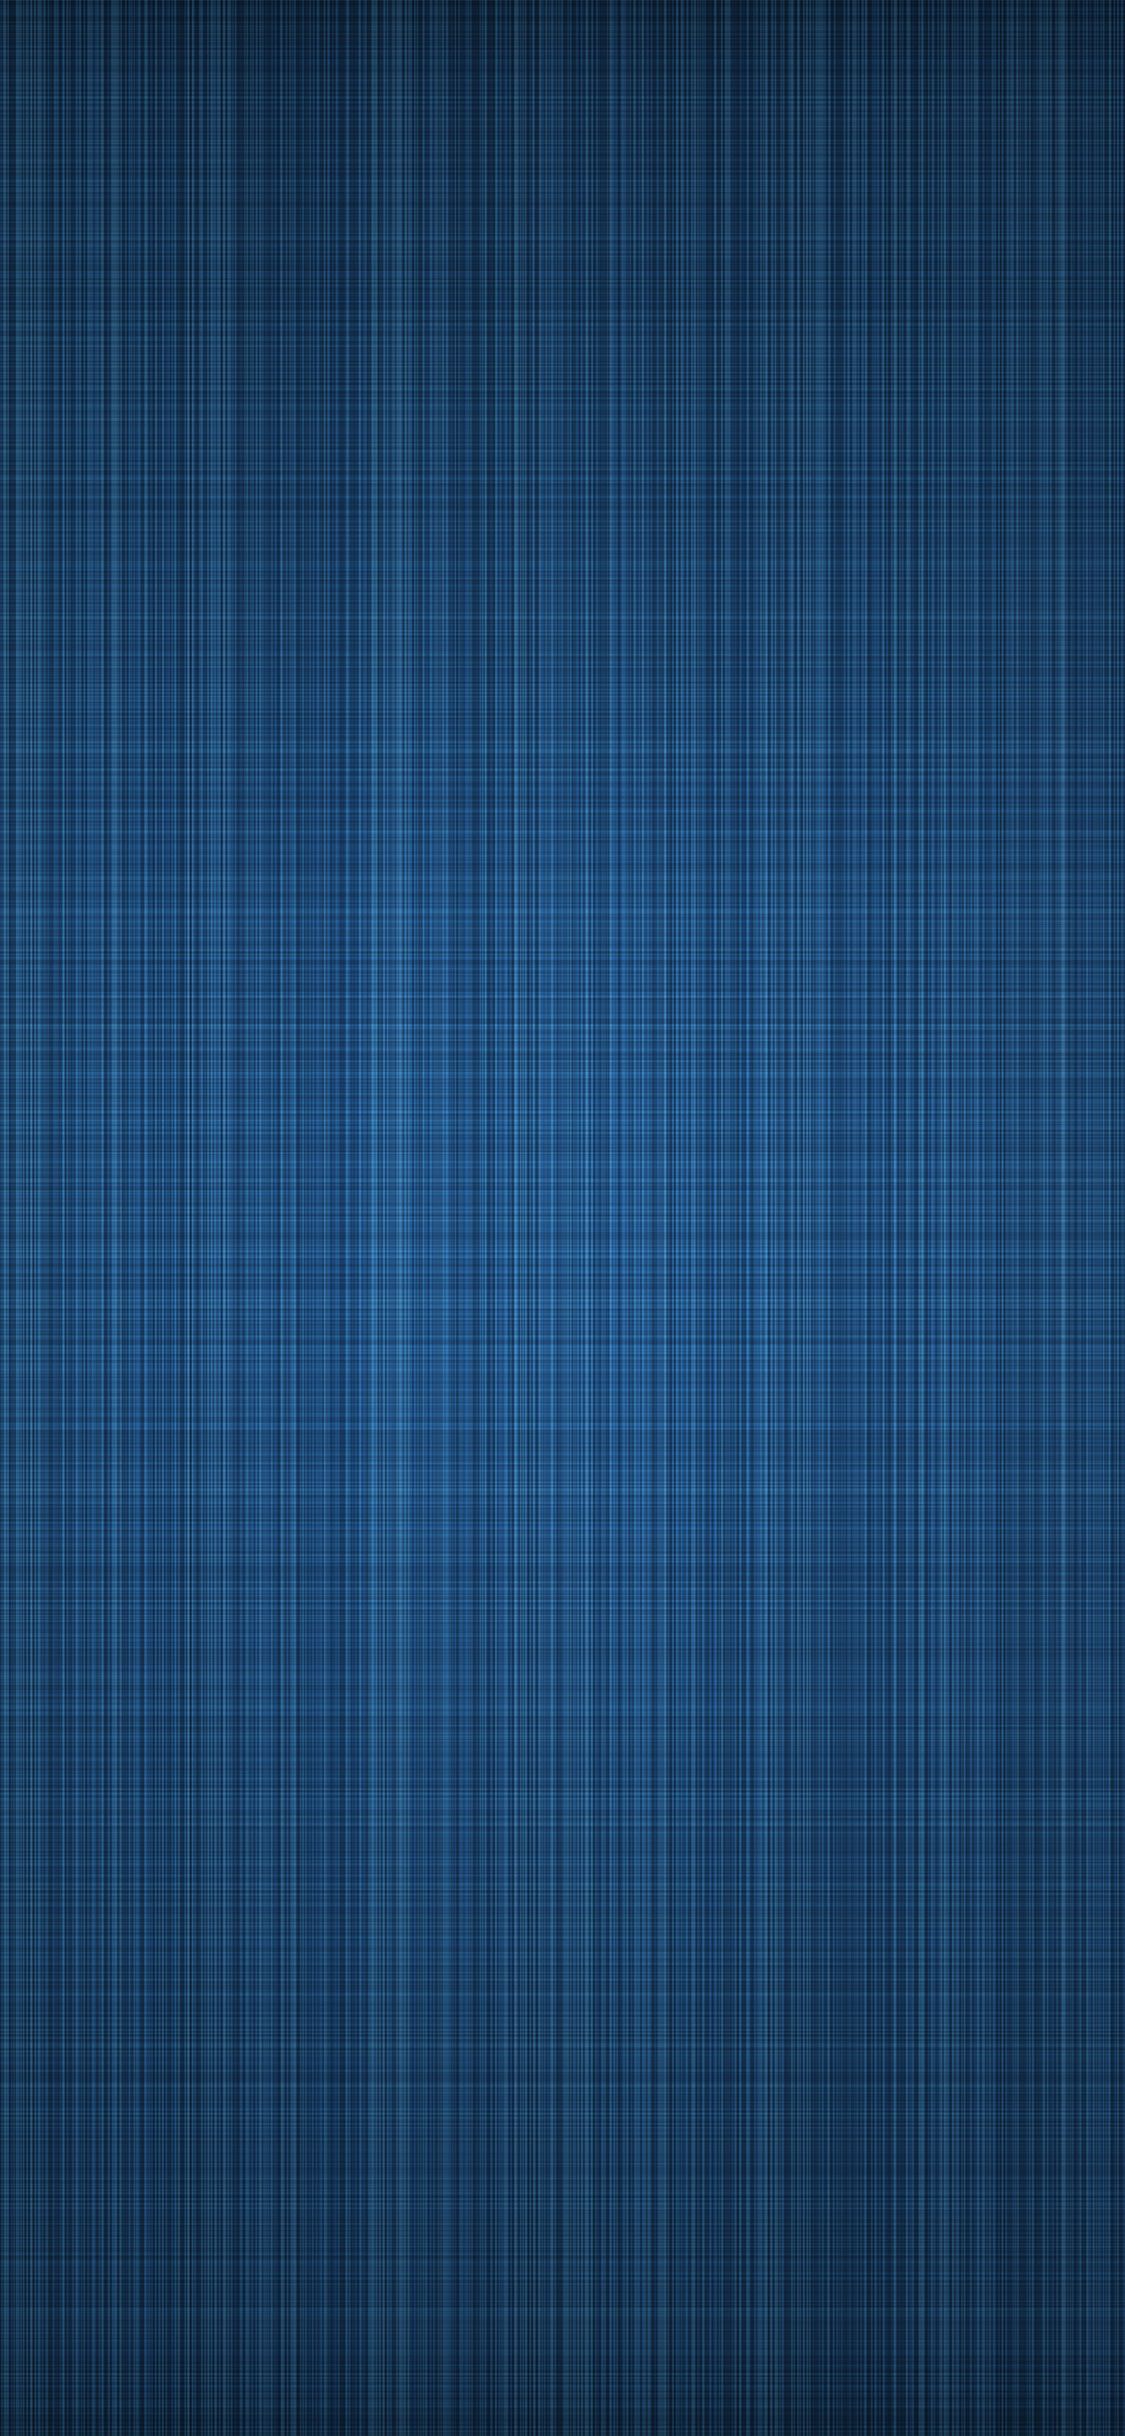 iPhone X wallpaper. linen blue abstract pattern